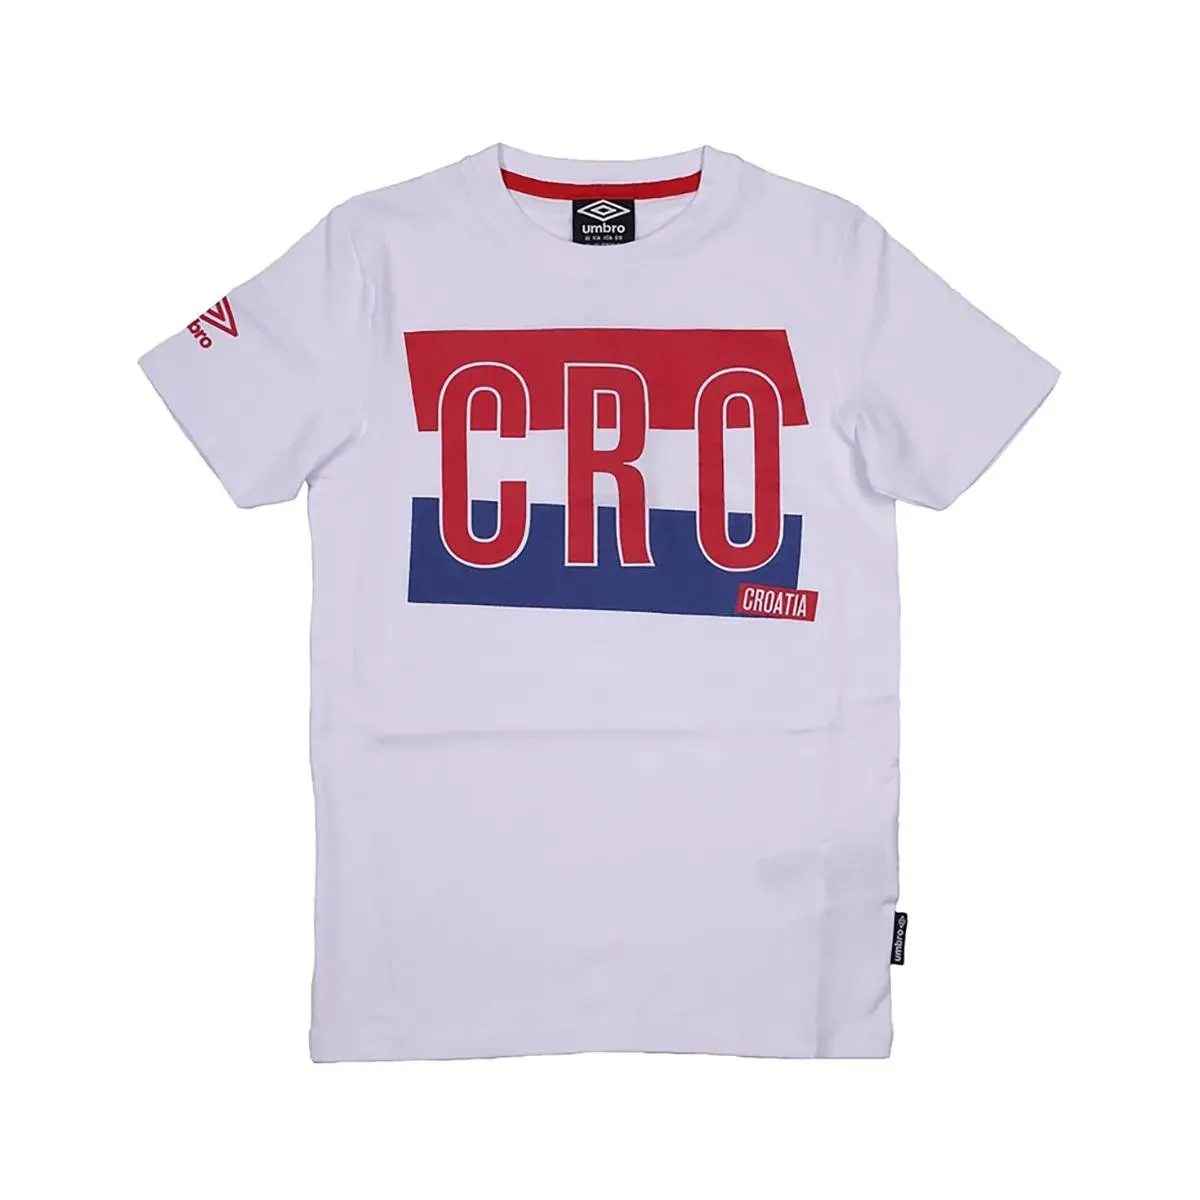 Umbro T-shirt TEE SHIRT CROATIA 